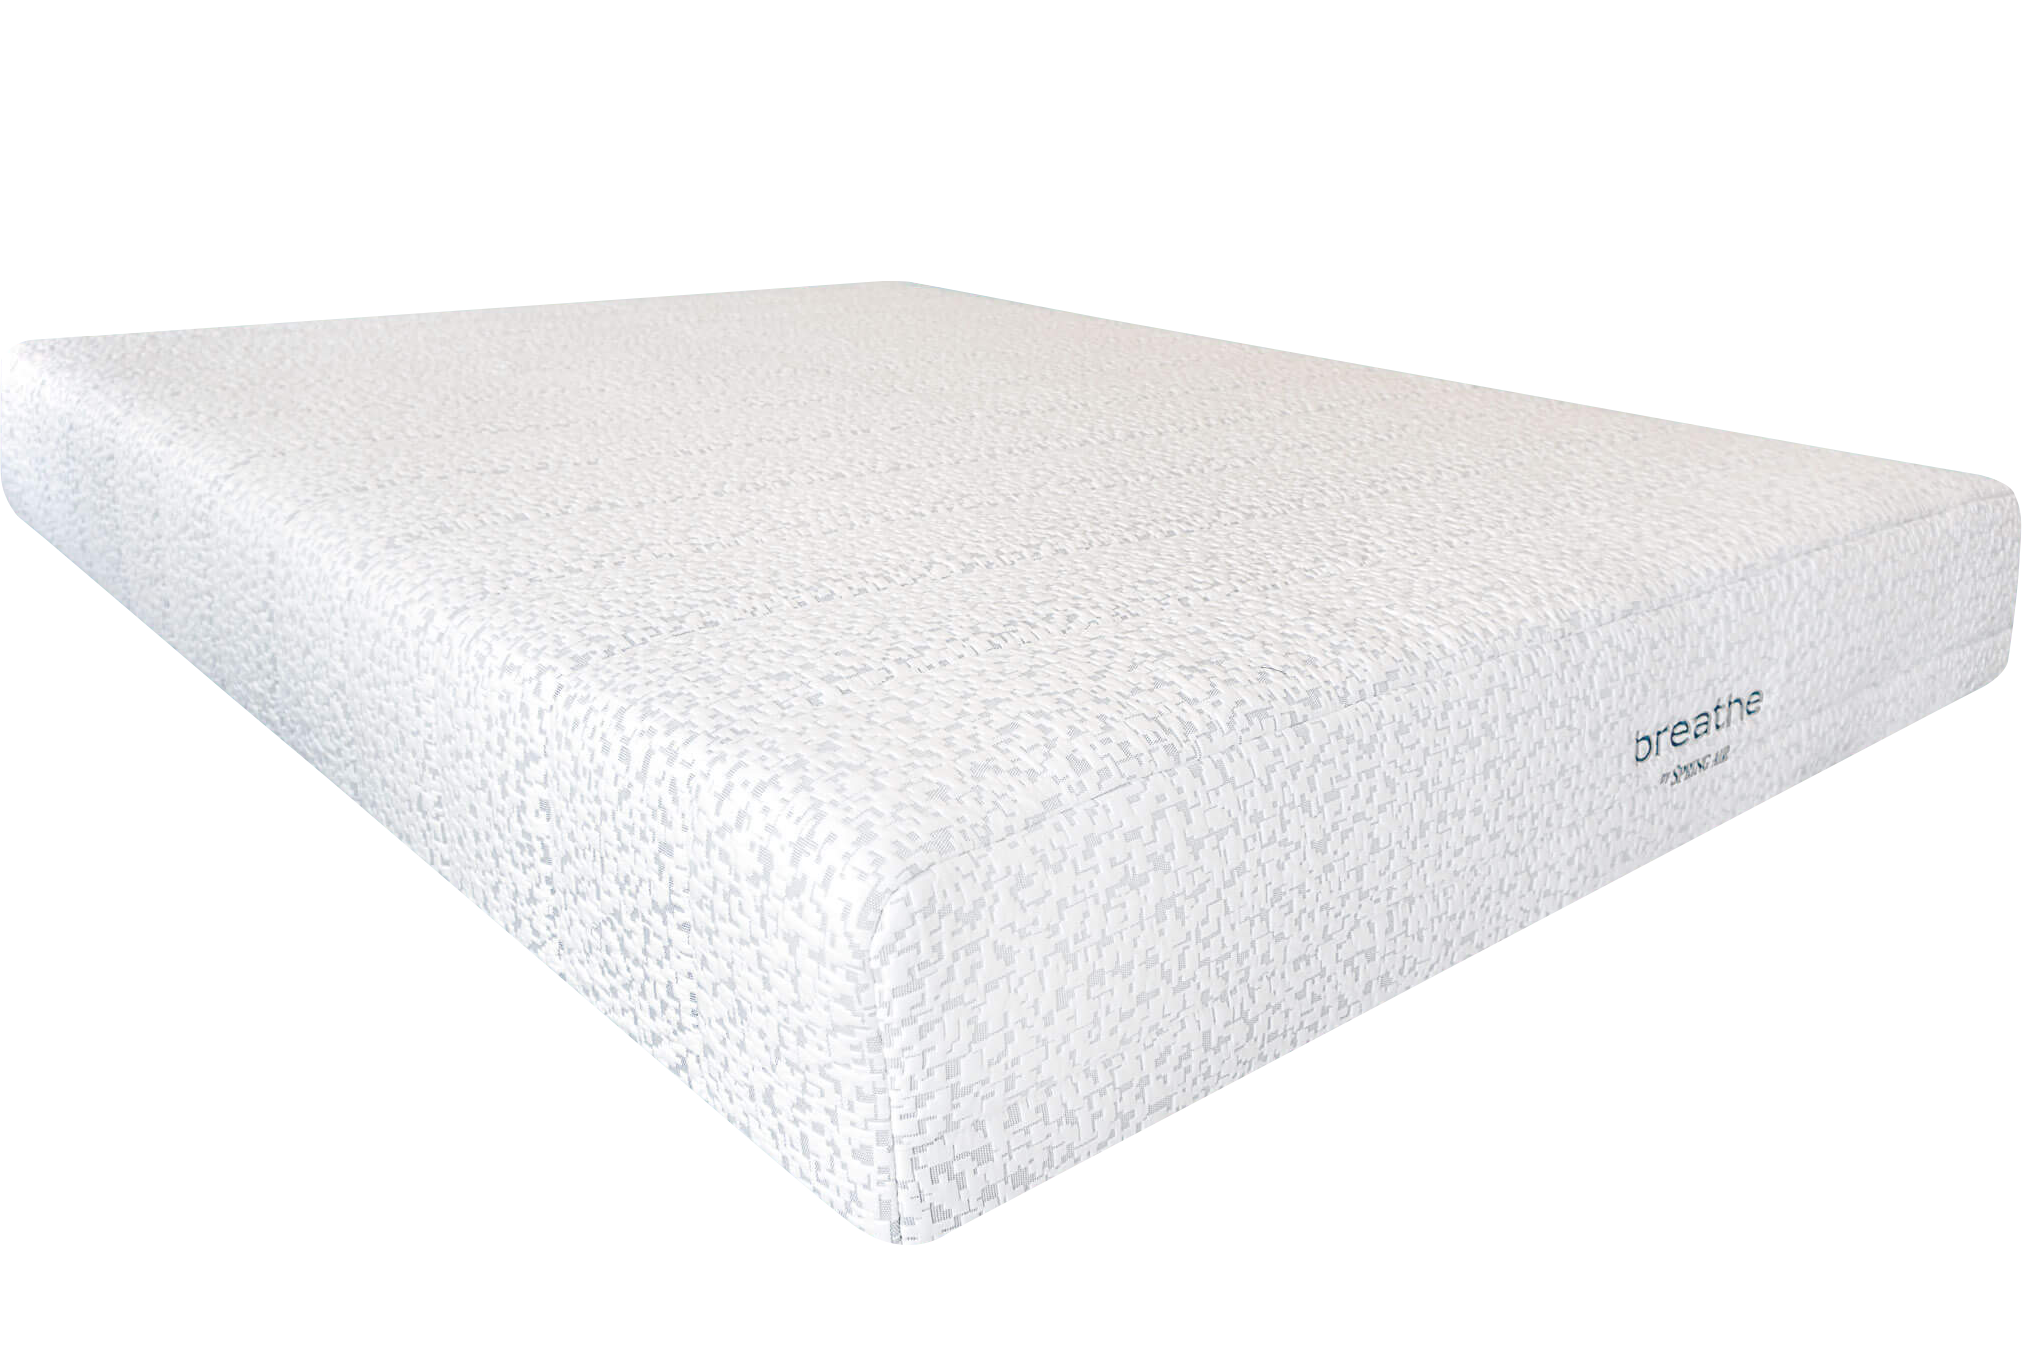 sunset collection memory foam mattress reviews